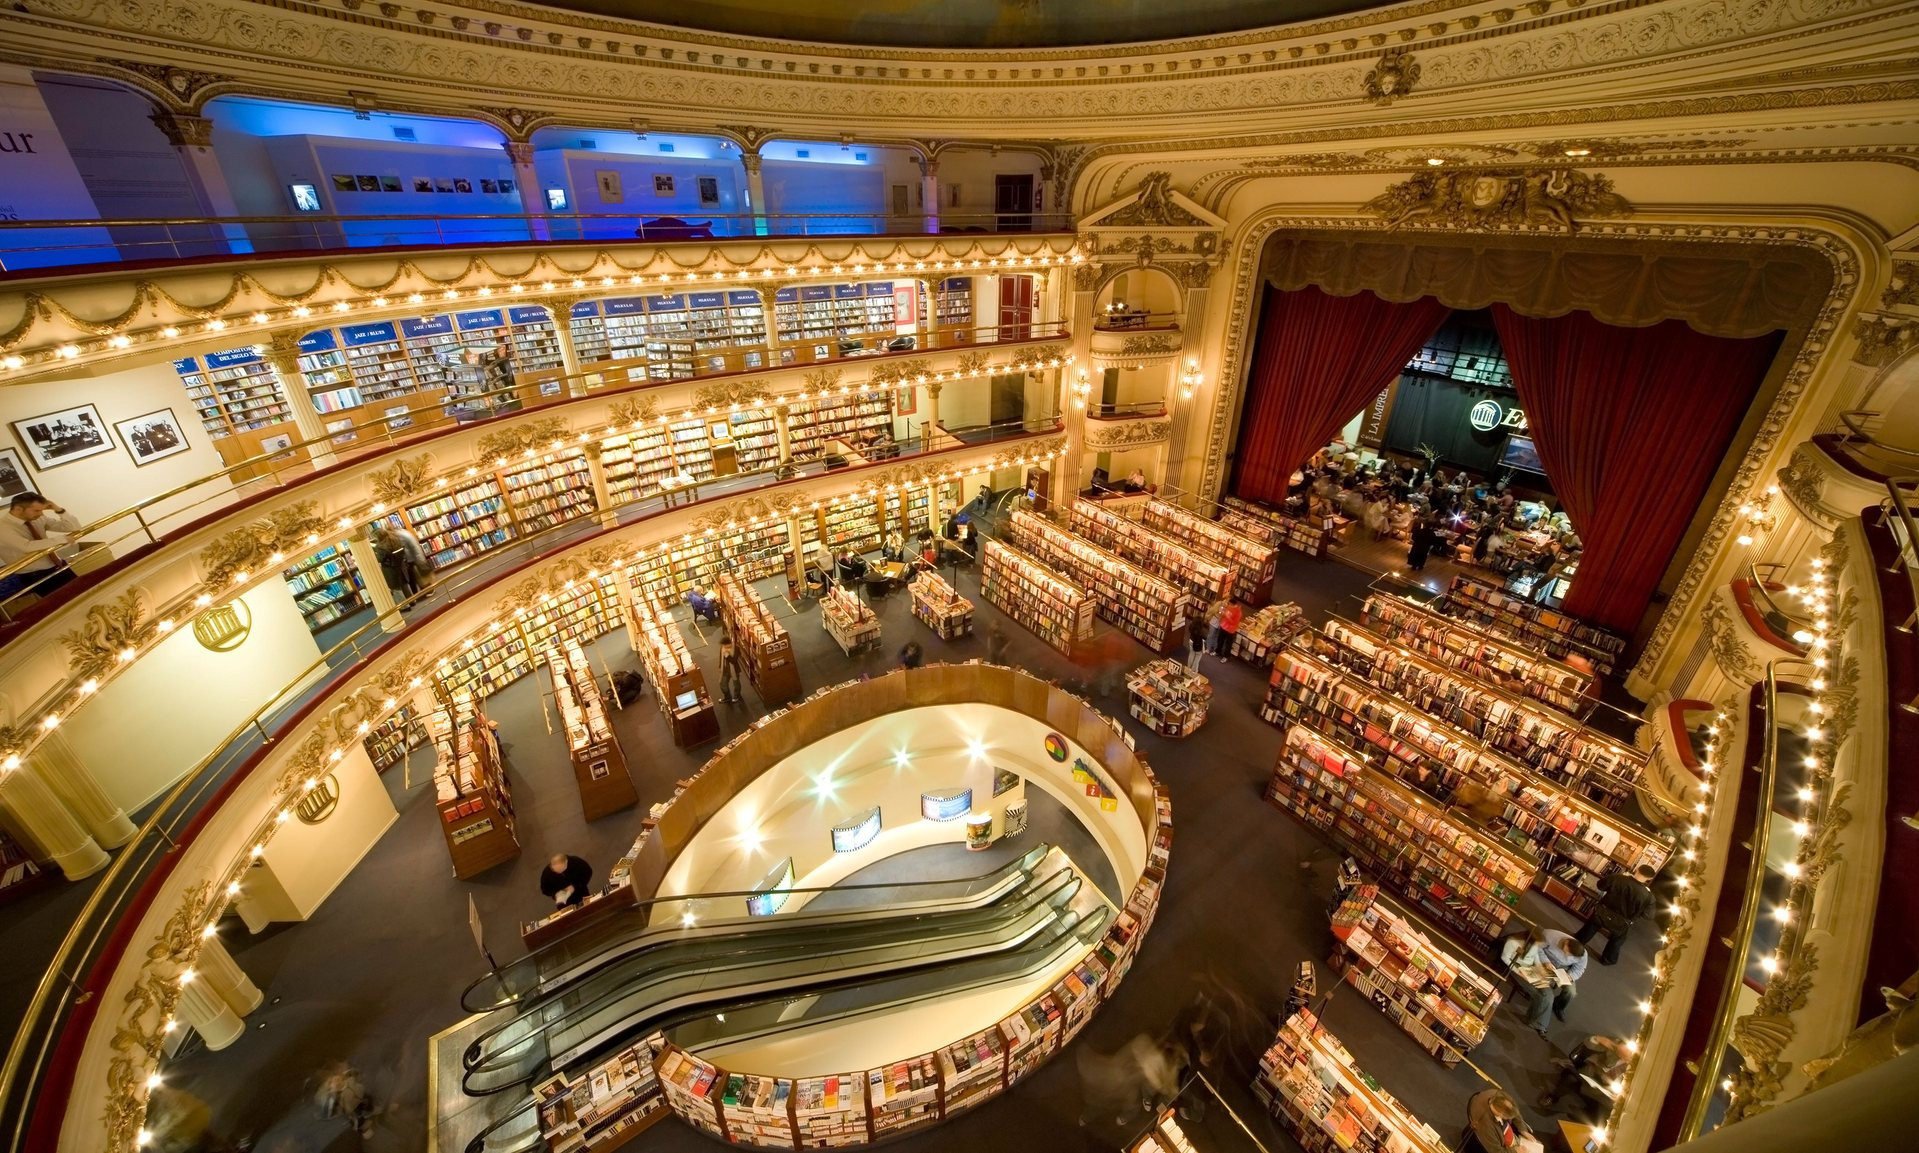 Αργεντινή: Το μεγαλοπρεπές θέατρο που έγινε διάσημο βιβλιοπωλείο [ΦΩΤΟ]